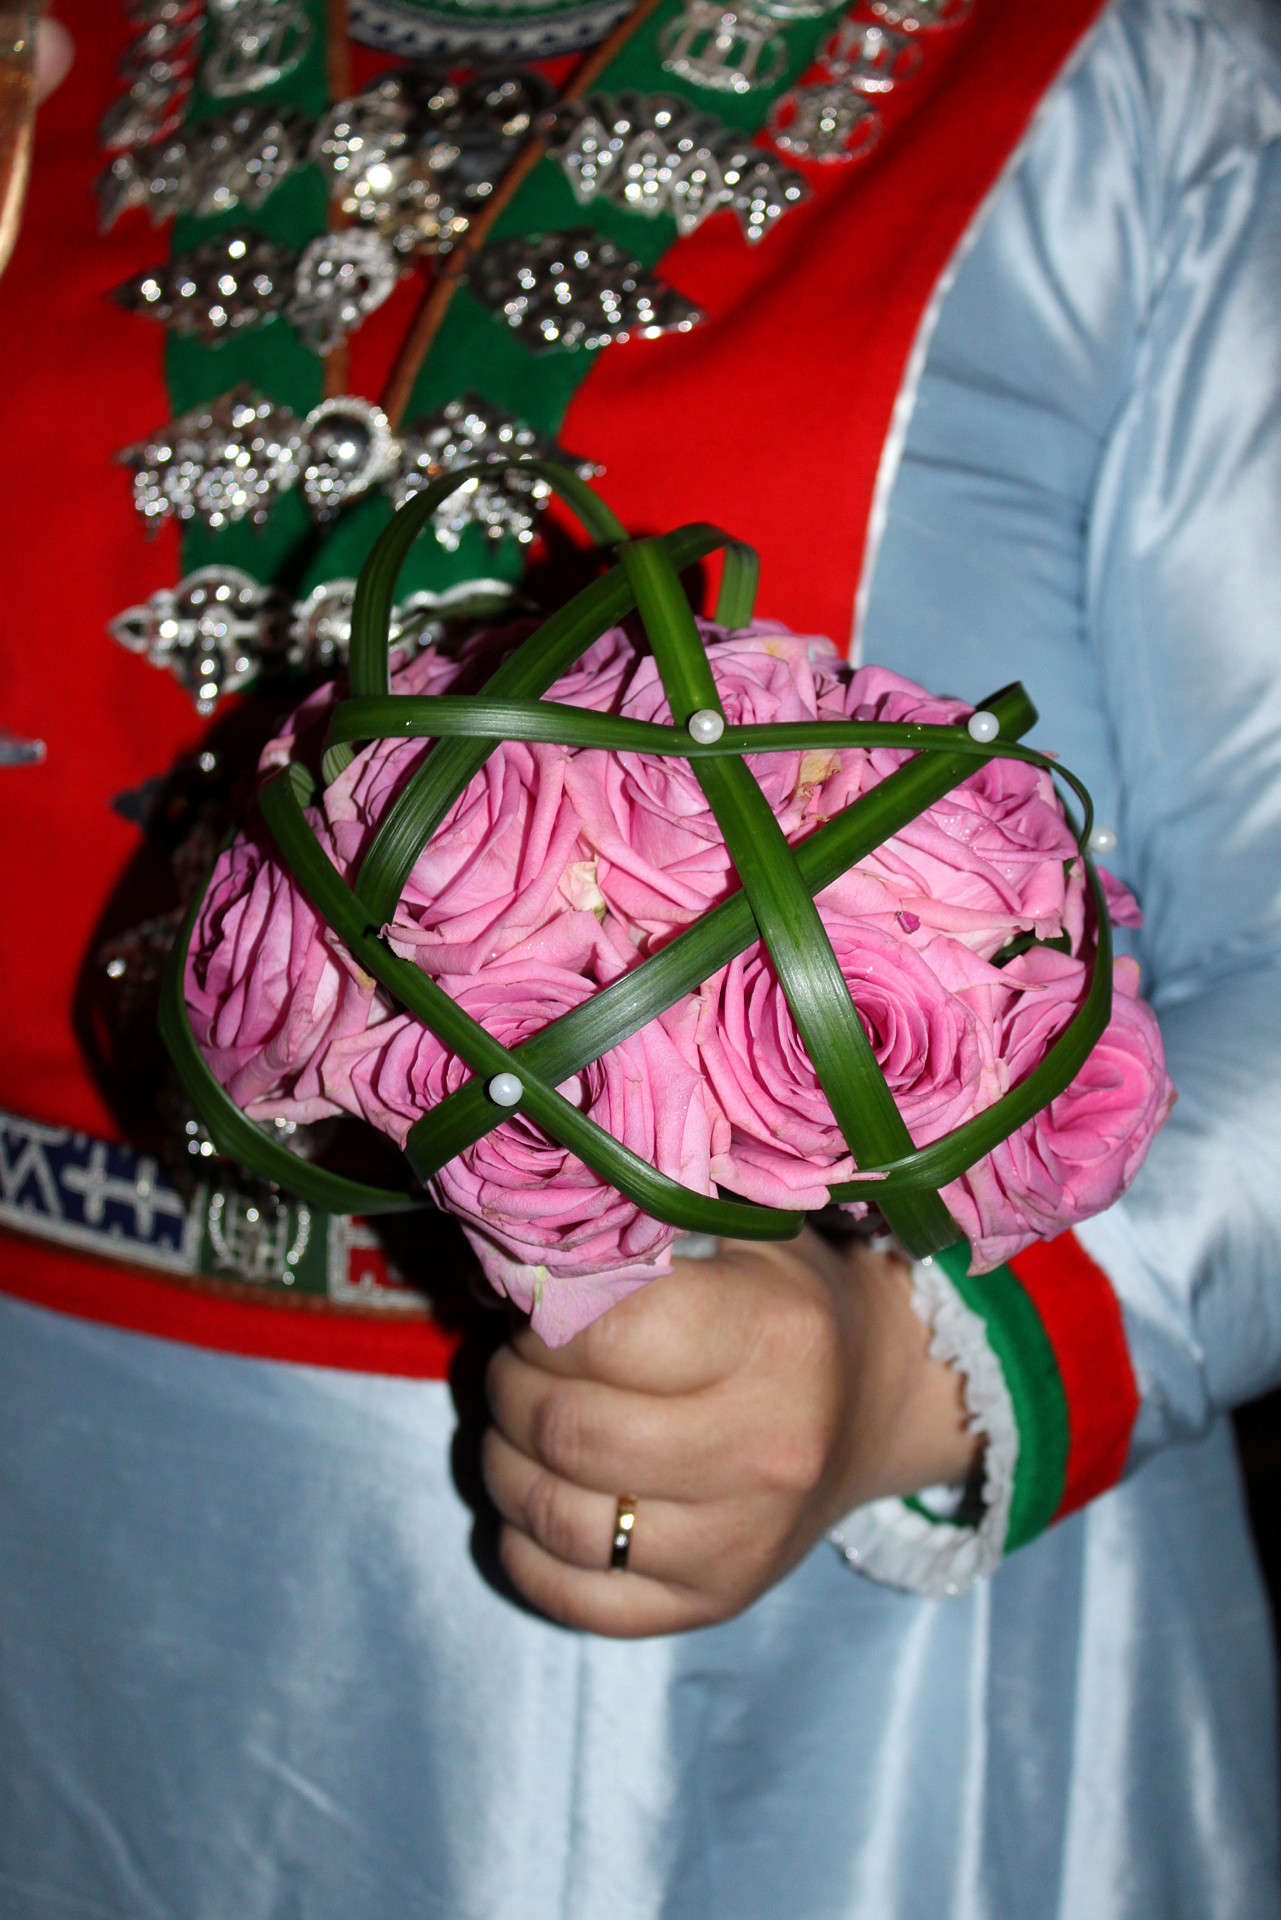 Brudbukett i handen på en brud i samiska bröllopskläder